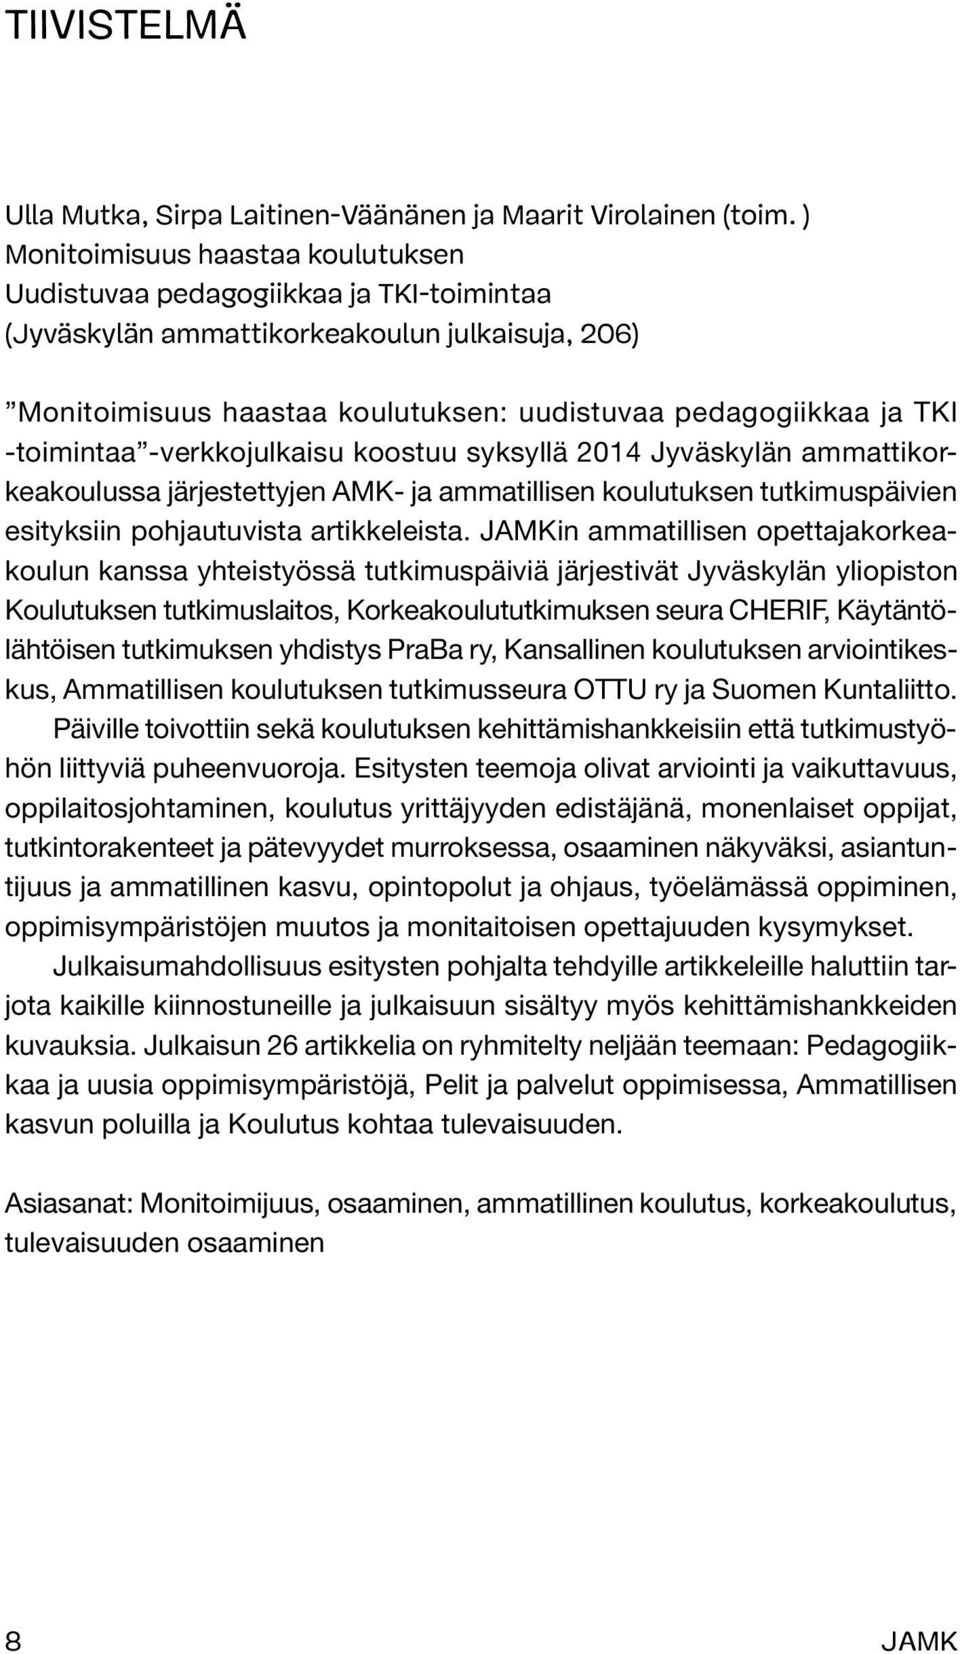 -toimintaa -verkkojulkaisu koostuu syksyllä 2014 Jyväskylän ammattikorkeakoulussa järjestettyjen AMK- ja ammatillisen koulutuksen tutkimuspäivien esityksiin pohjautuvista artikkeleista.